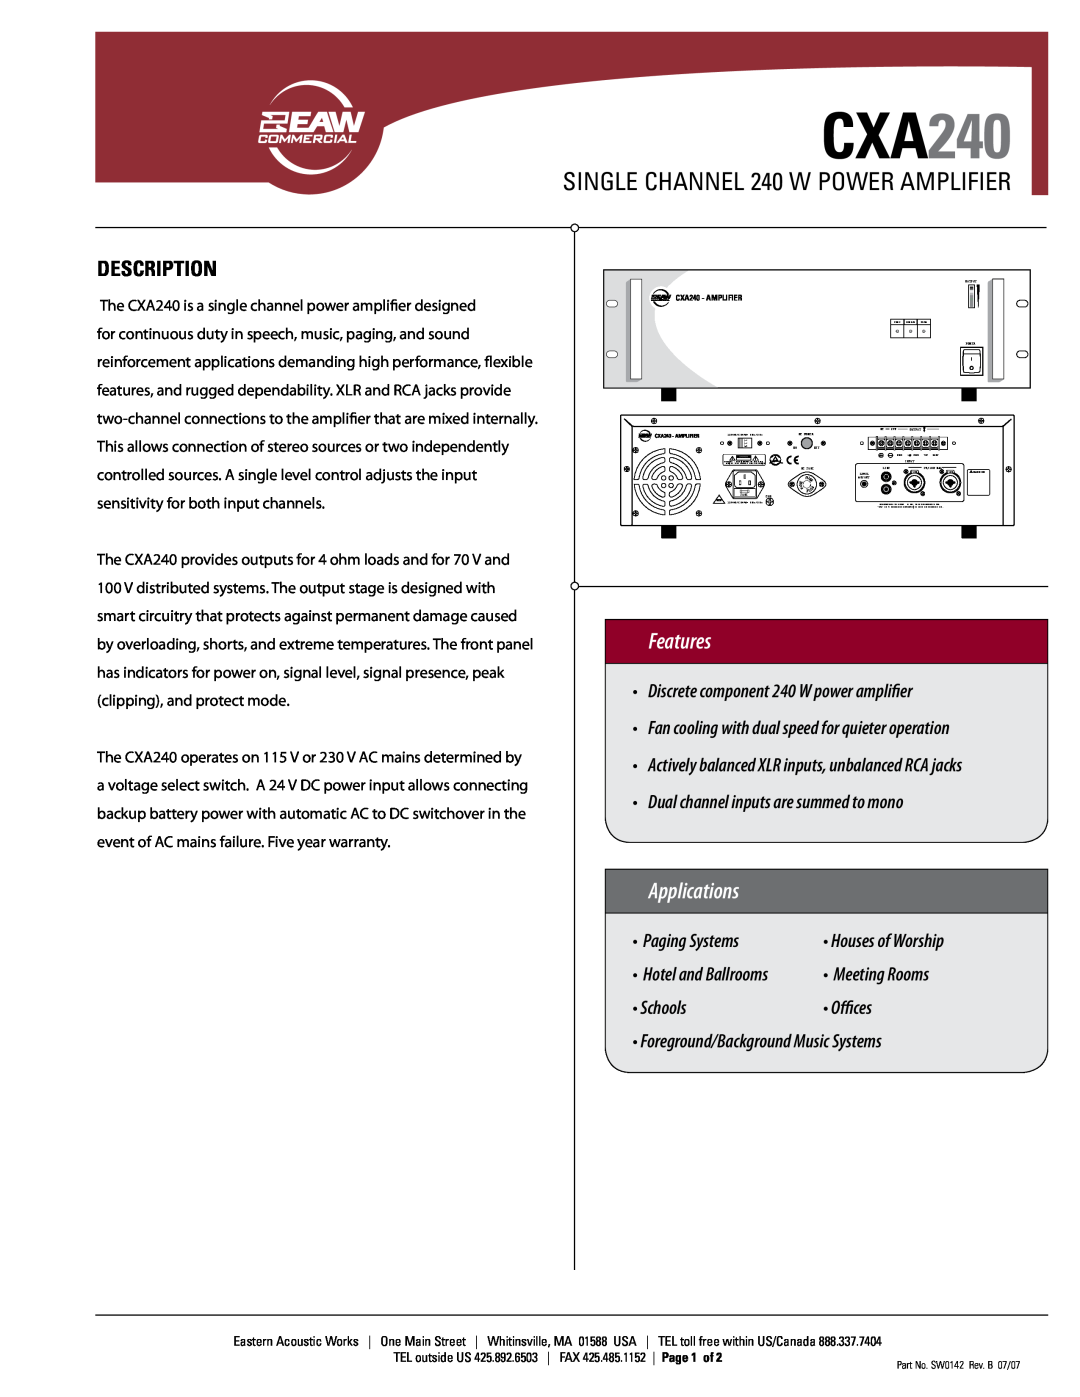 EAW CXA240 warranty SINGLE CHANNEL 240 W POWER AMPLIFIER, Description, Features, Applications, • Paging Systems, Schools 